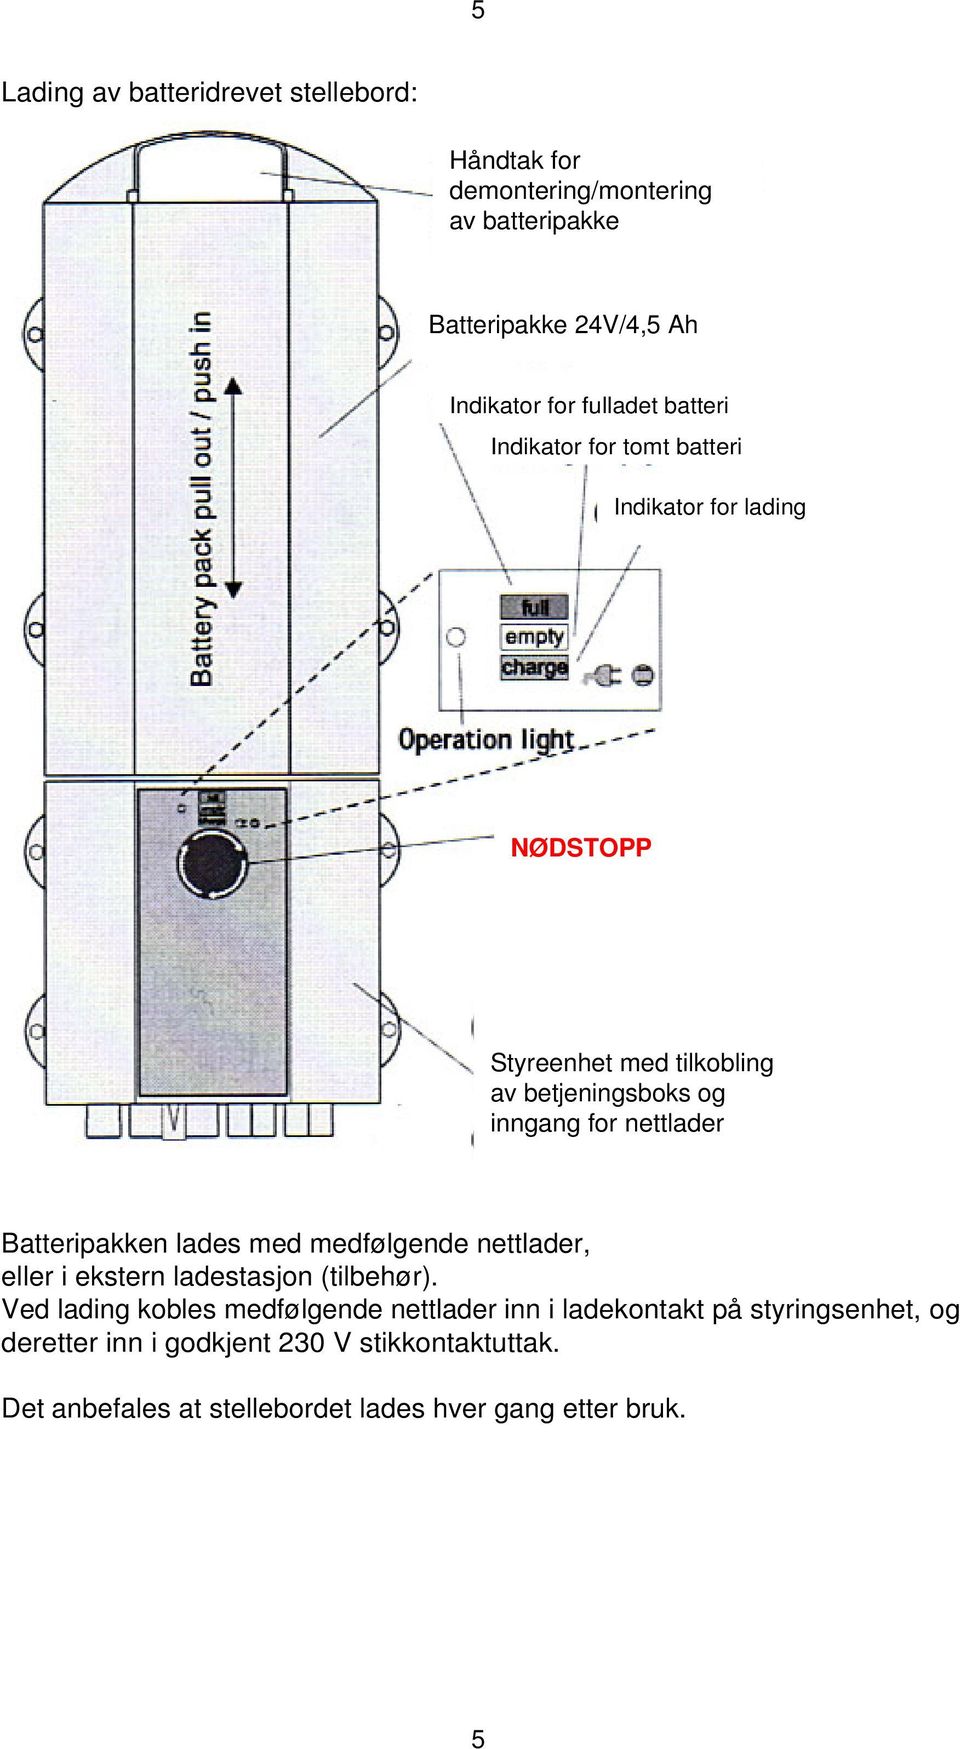 Batteripakken lades med medfølgende nettlader, eller i ekstern ladestasjon (tilbehør).